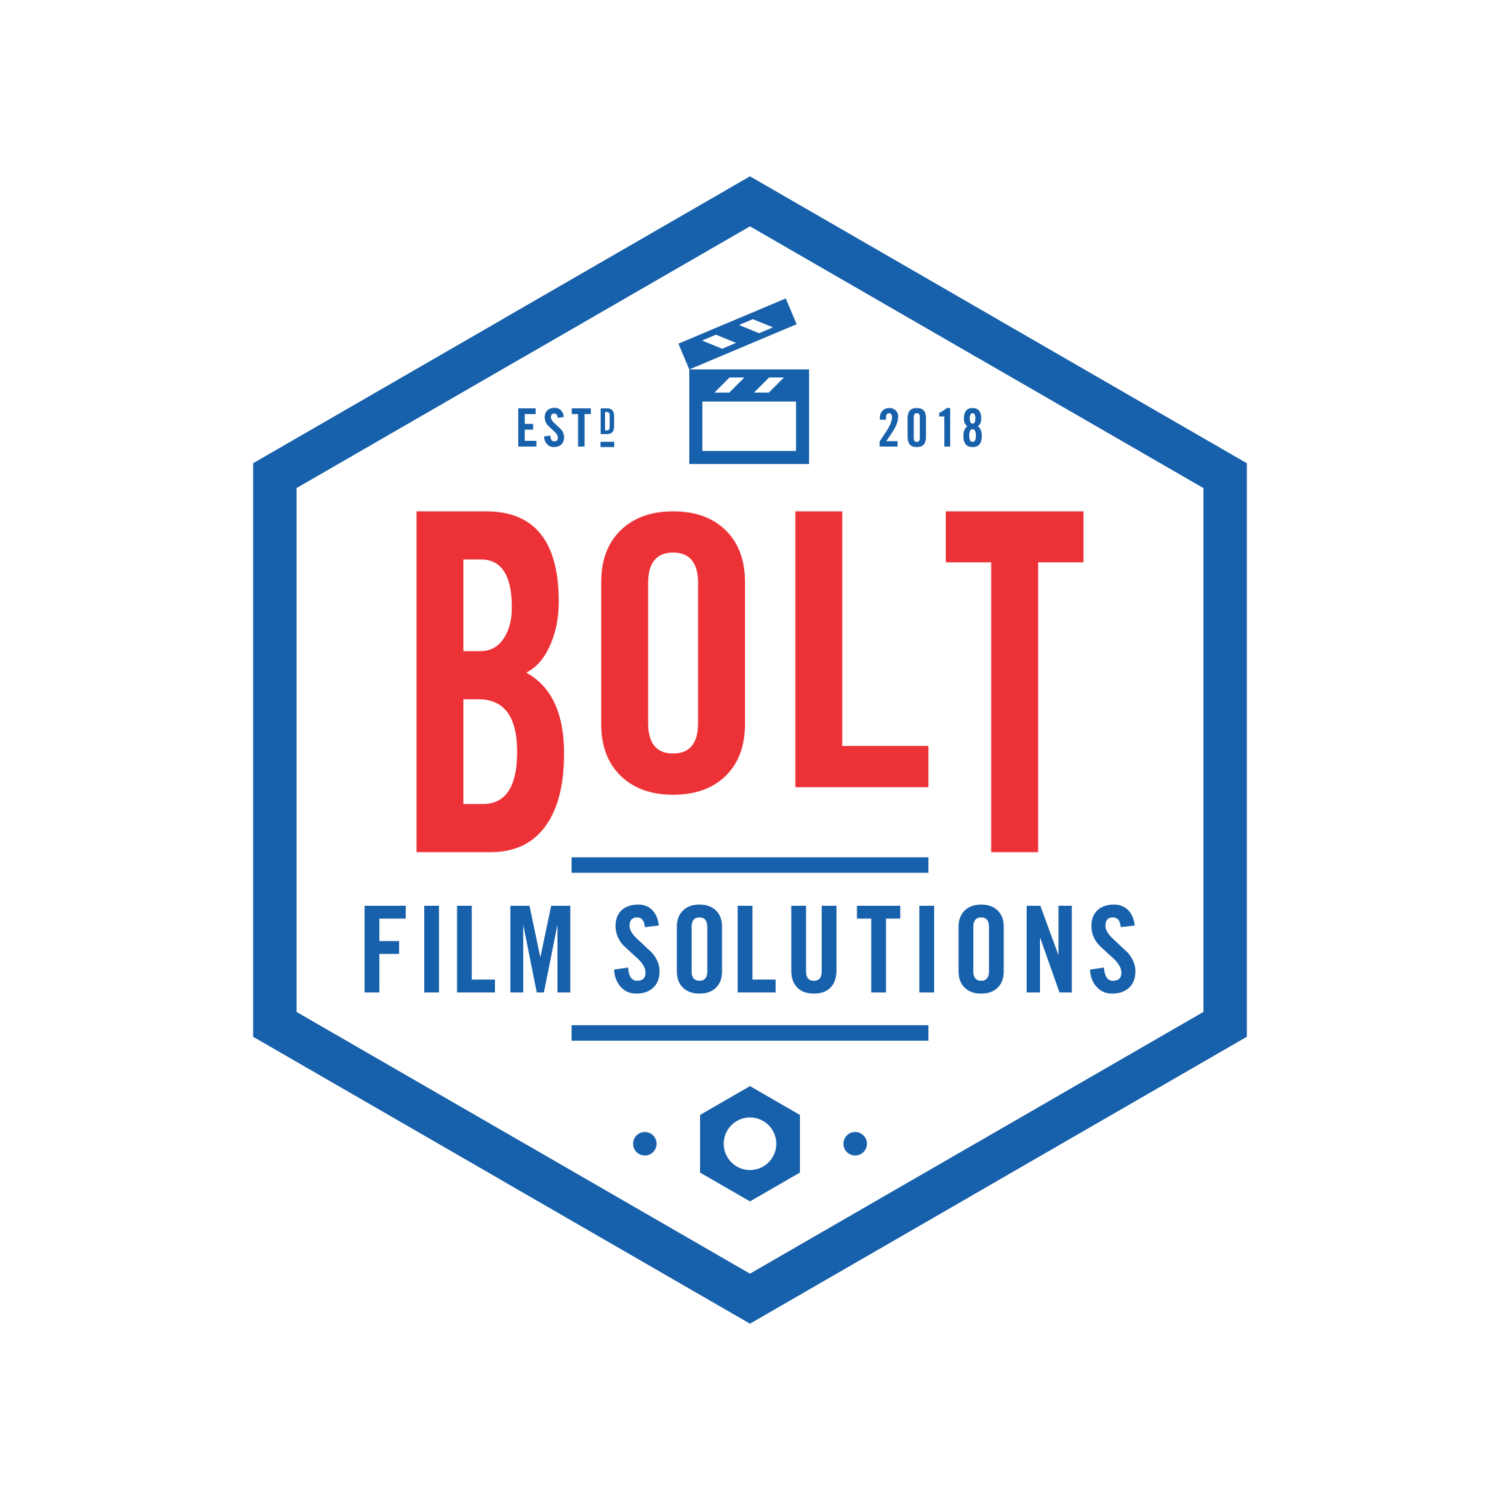 Bolt Film Solutions 